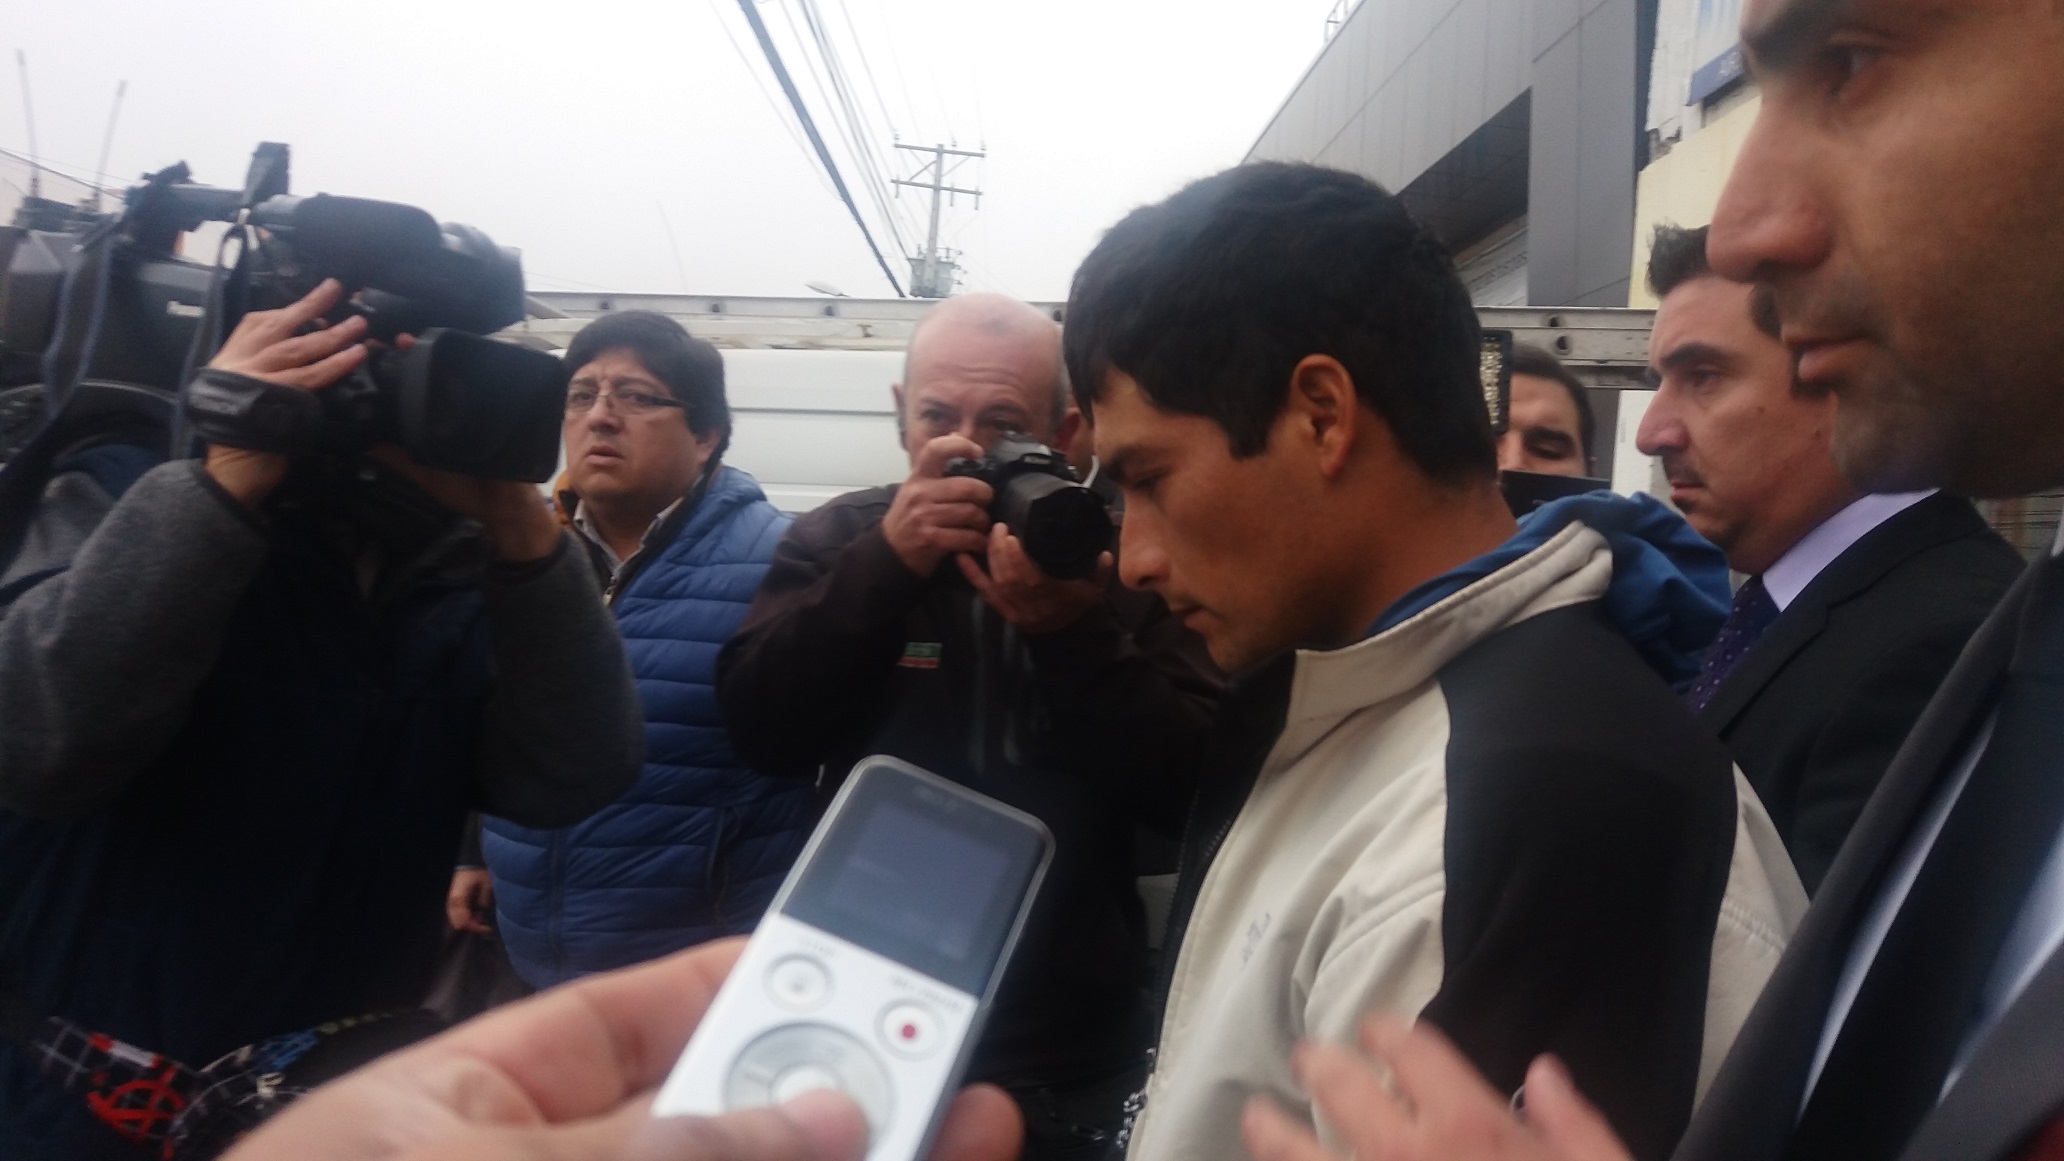 En prisión preventiva  hermanos implicados en brutal homicidio registrado  en plena calle de la población Carlos González Cruchaga en Maule   